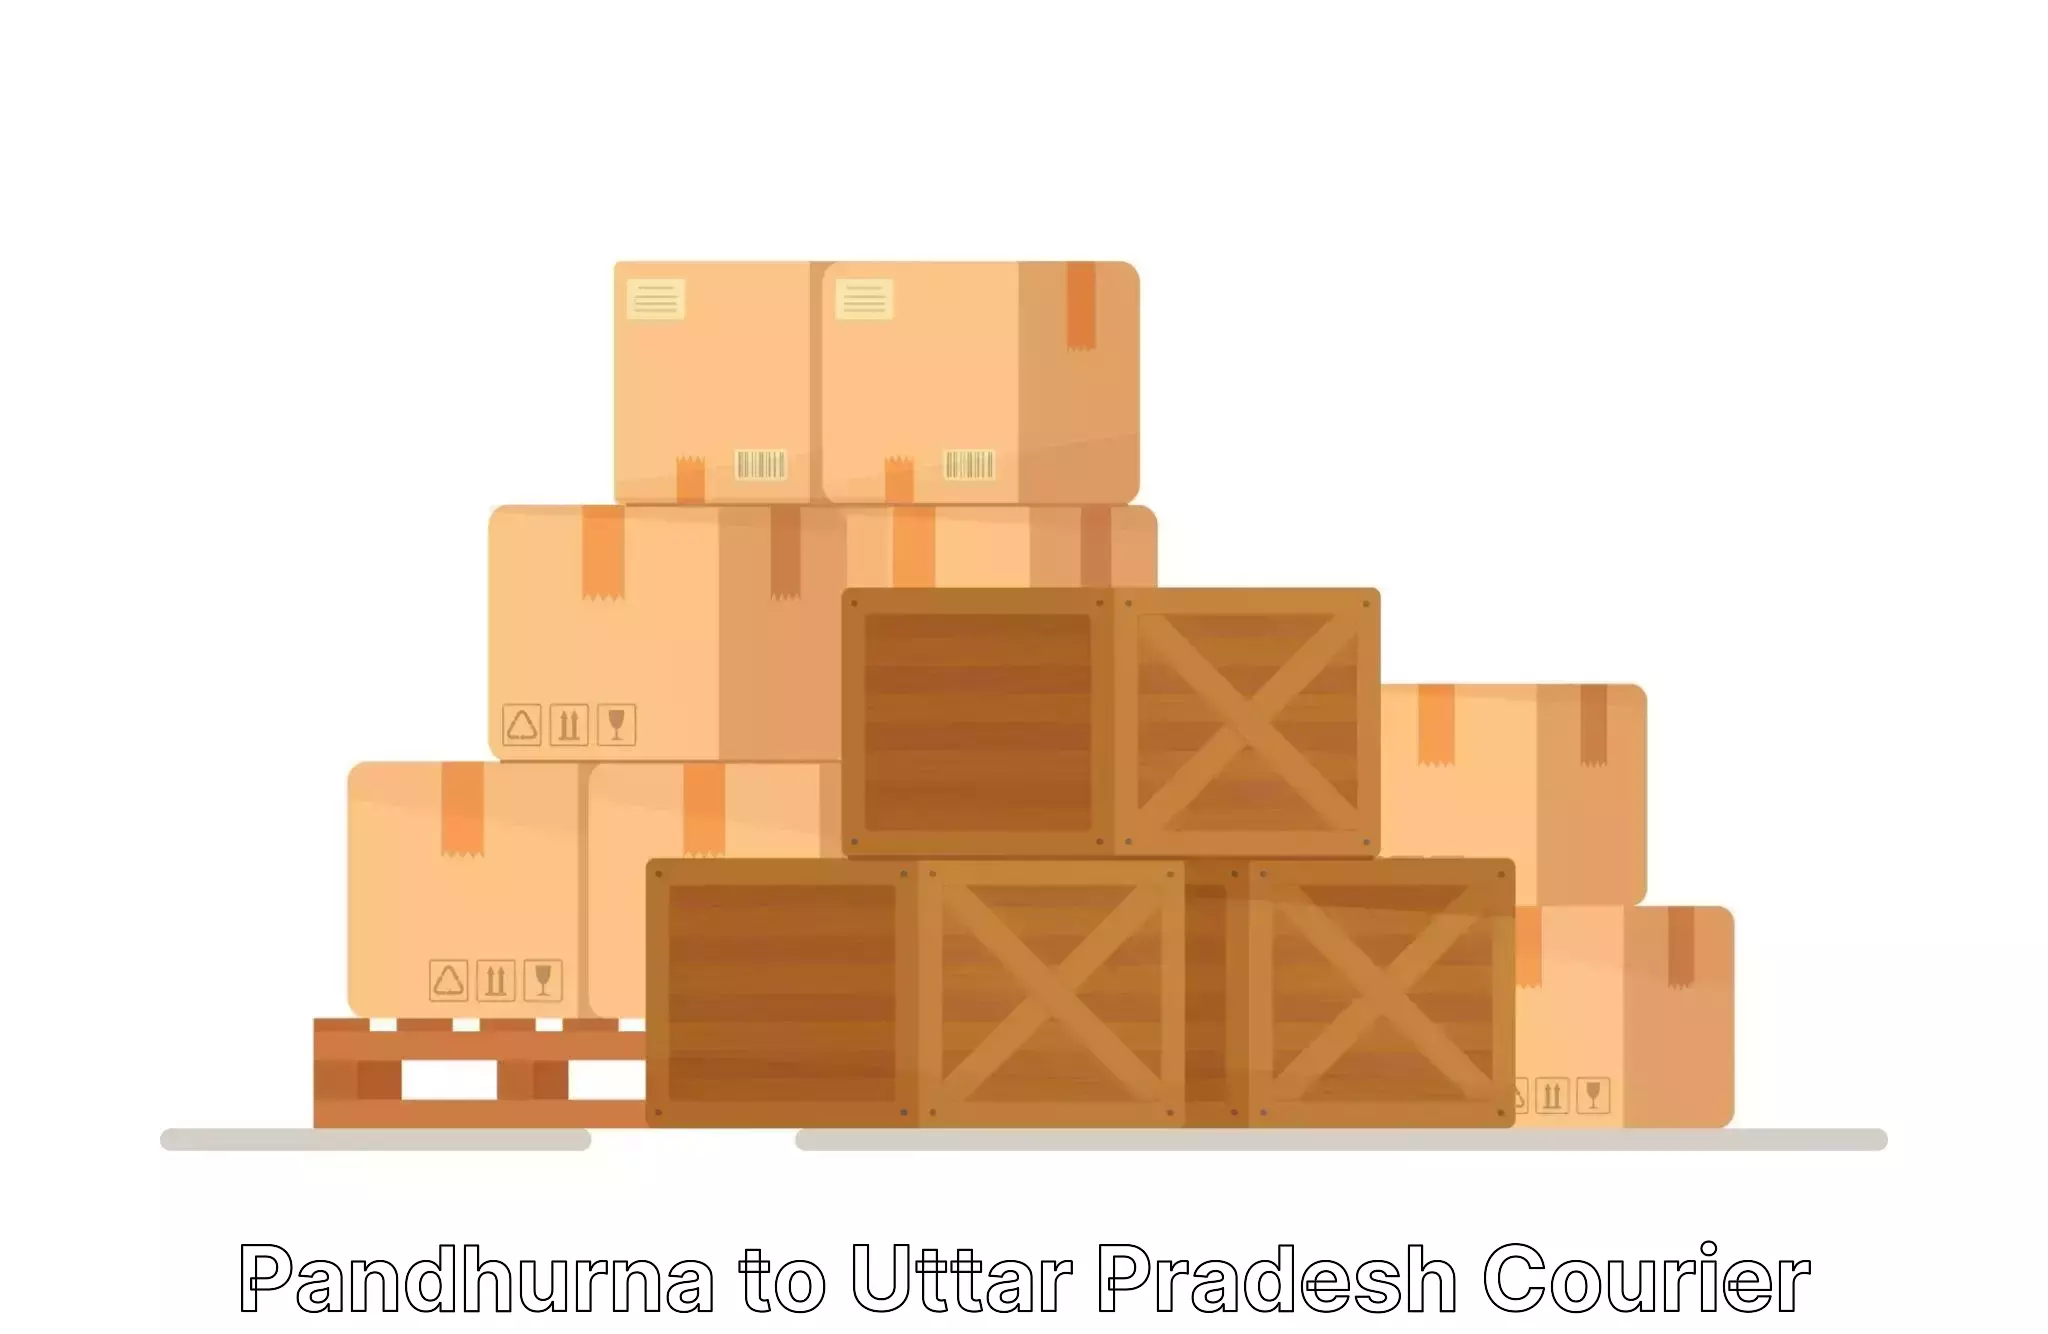 Furniture moving plans Pandhurna to Uttar Pradesh